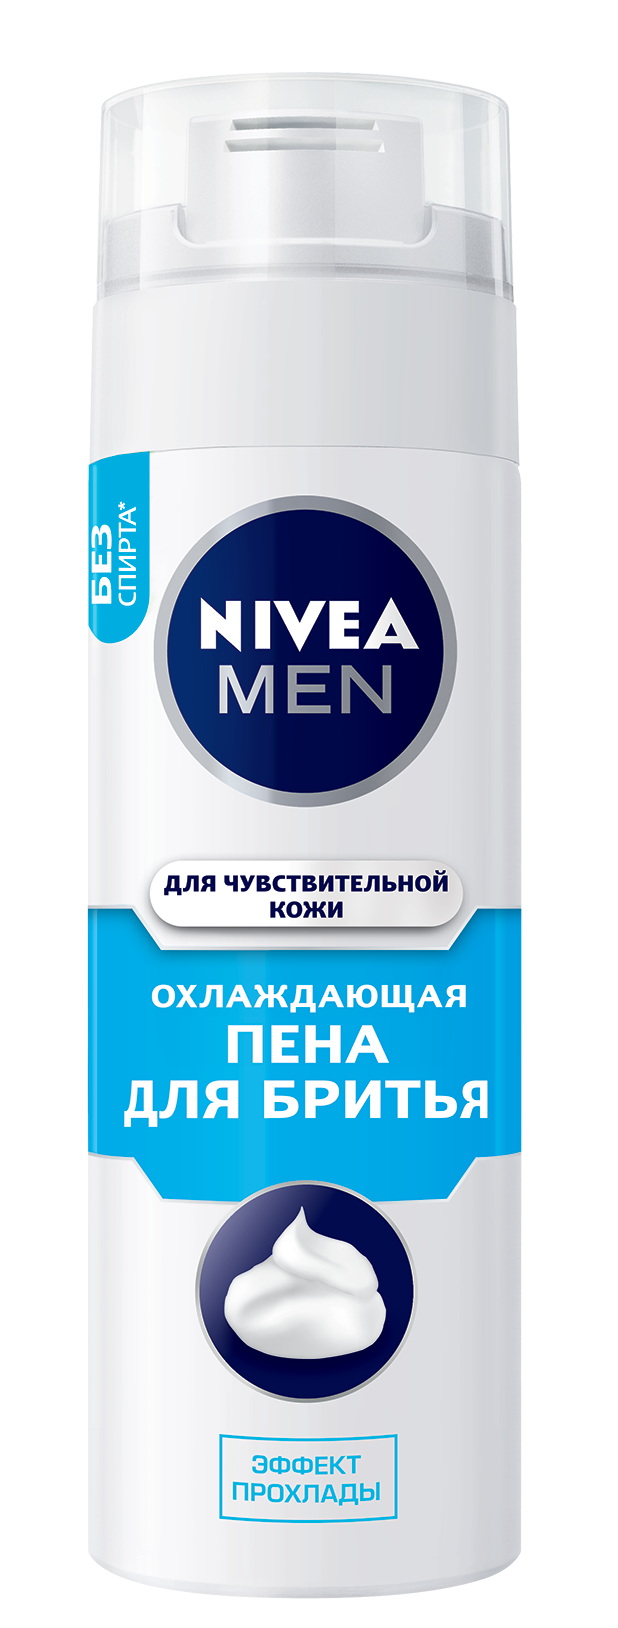 Пена для бритья NIVEA Men Охлаждающая для чувствительной кожи, 200 мл